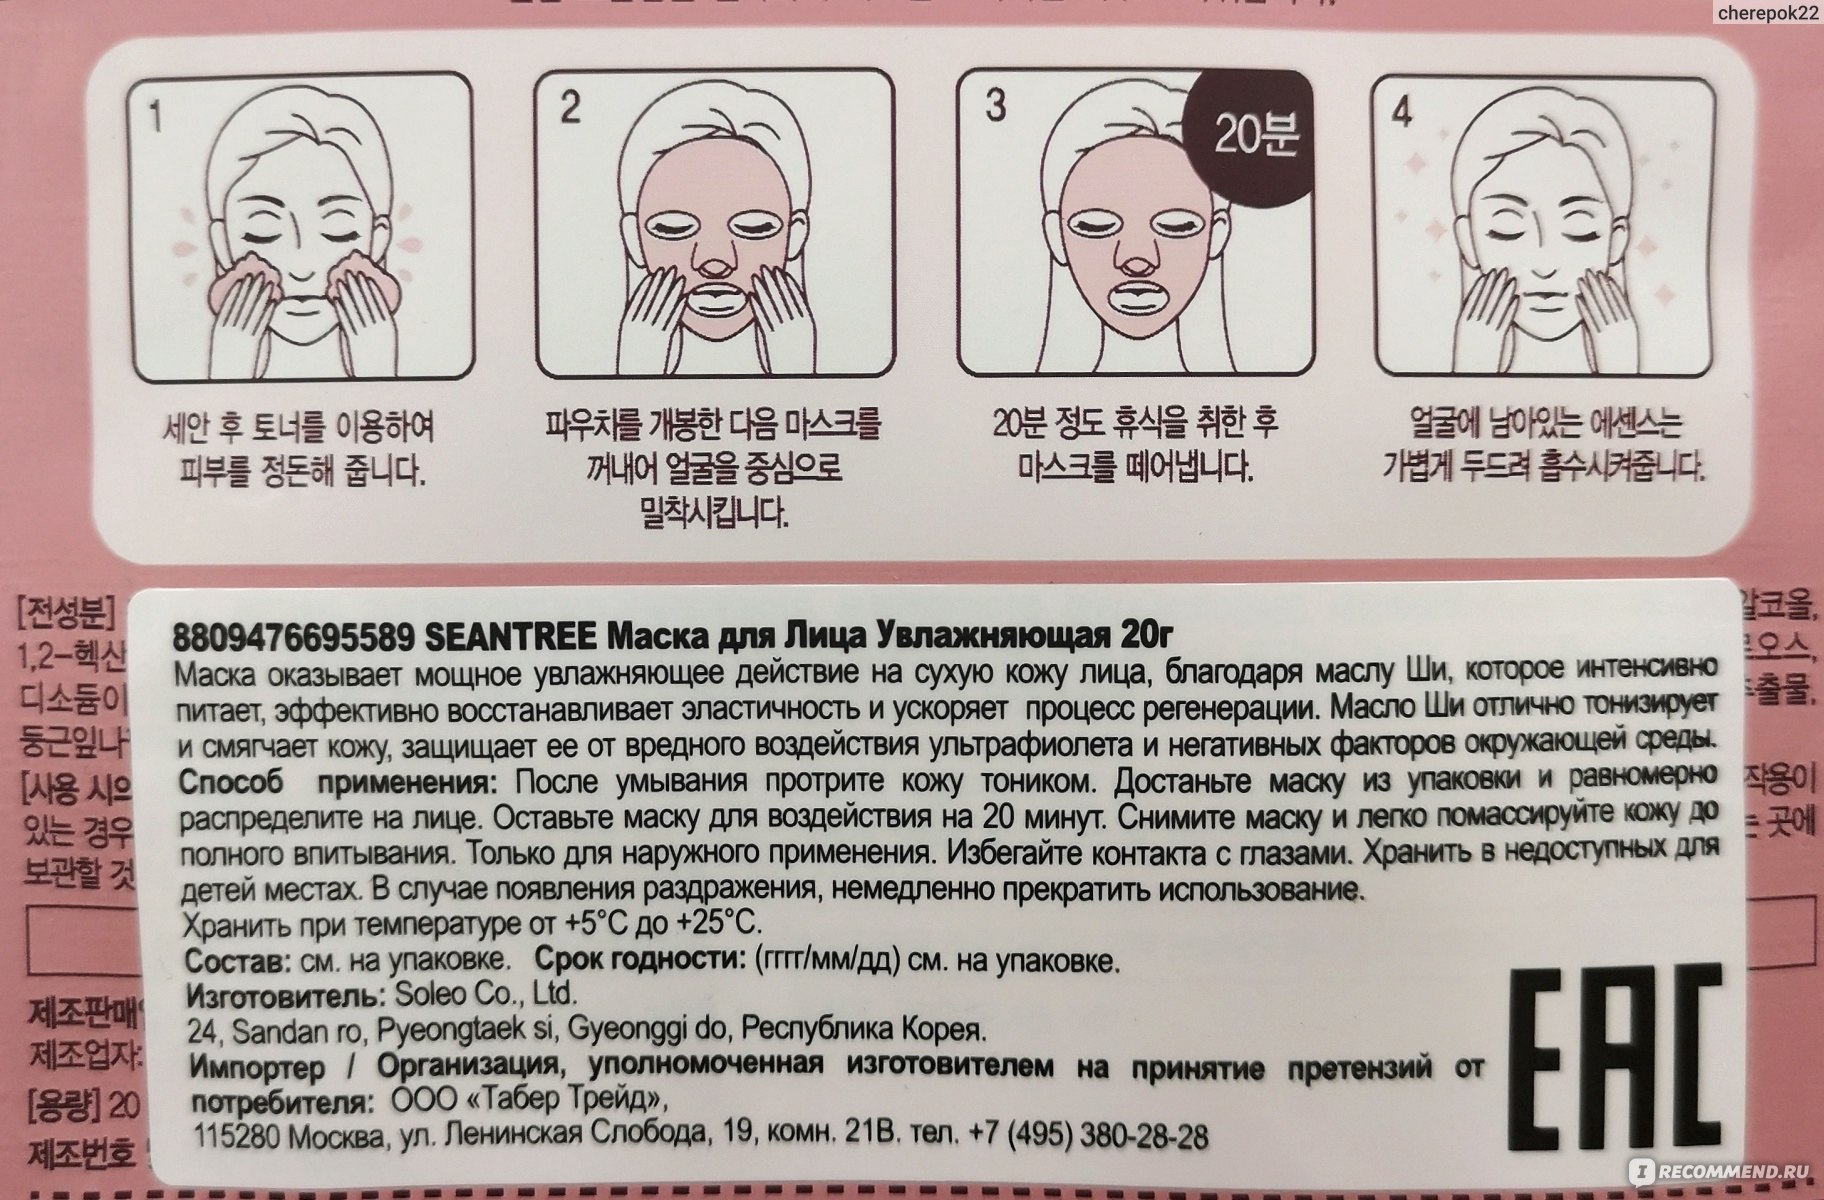 Как пользоваться корейскими масками для волос